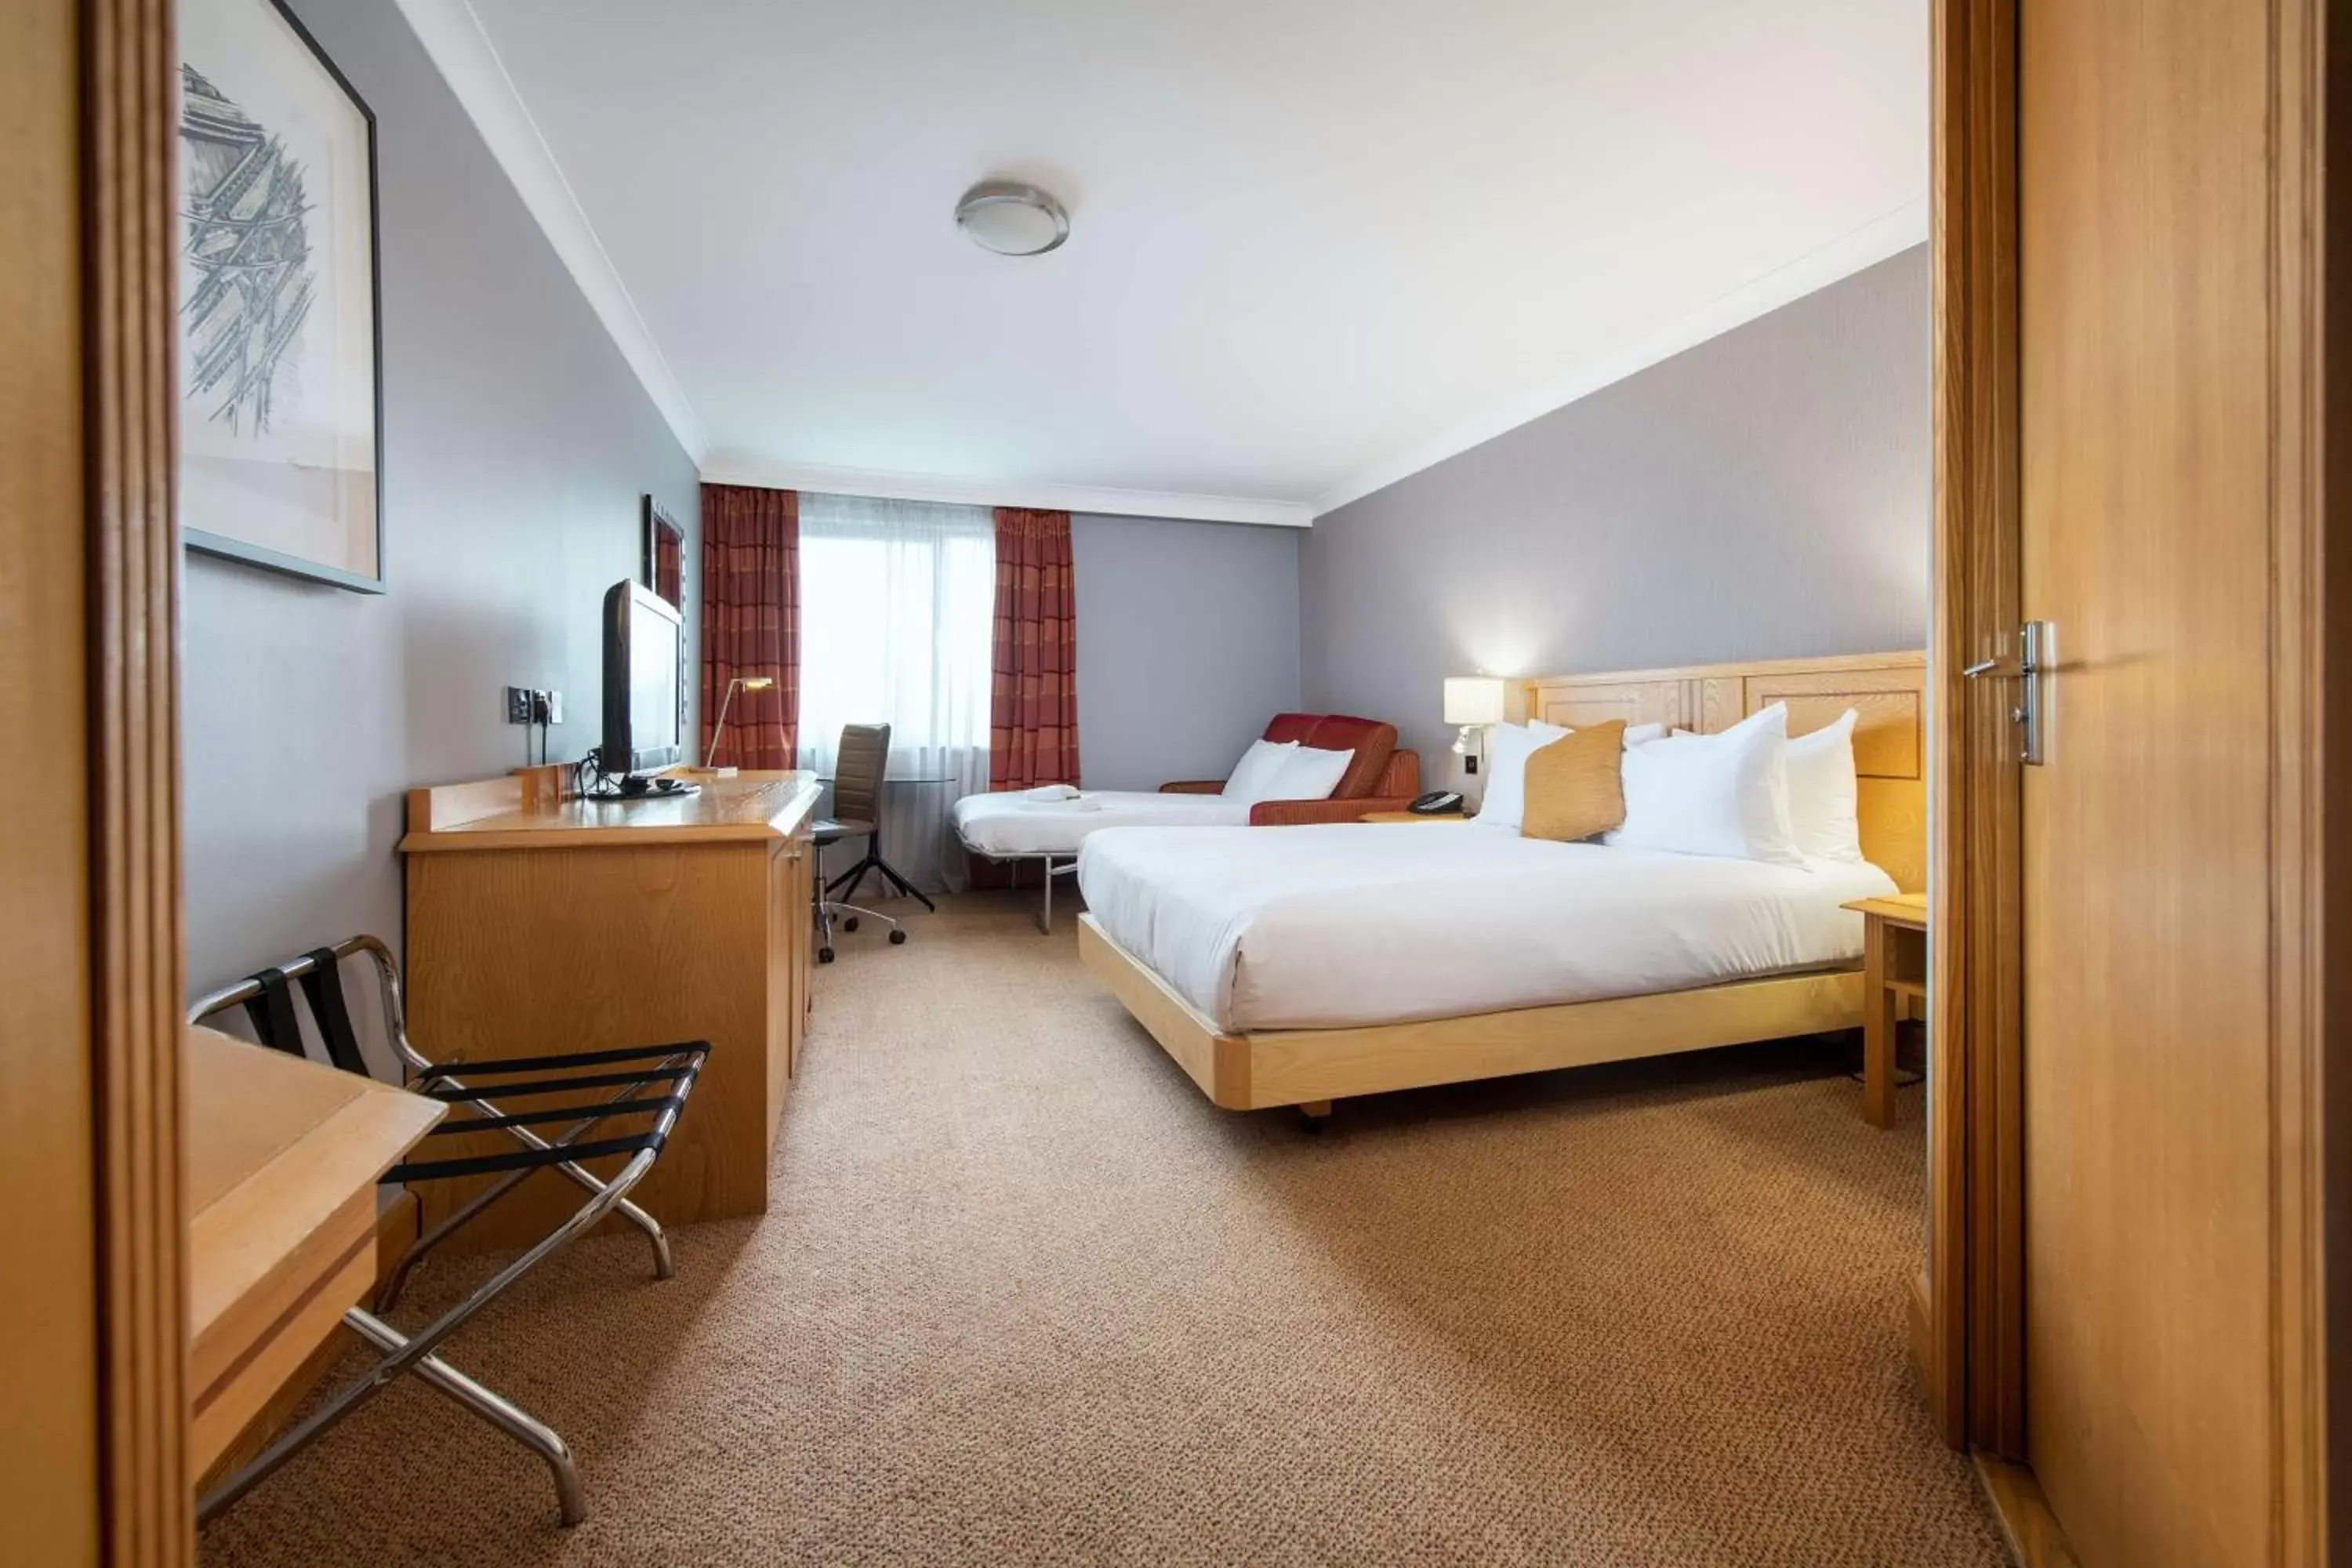 Bedroom in DoubleTree by Hilton Swindon Hotel